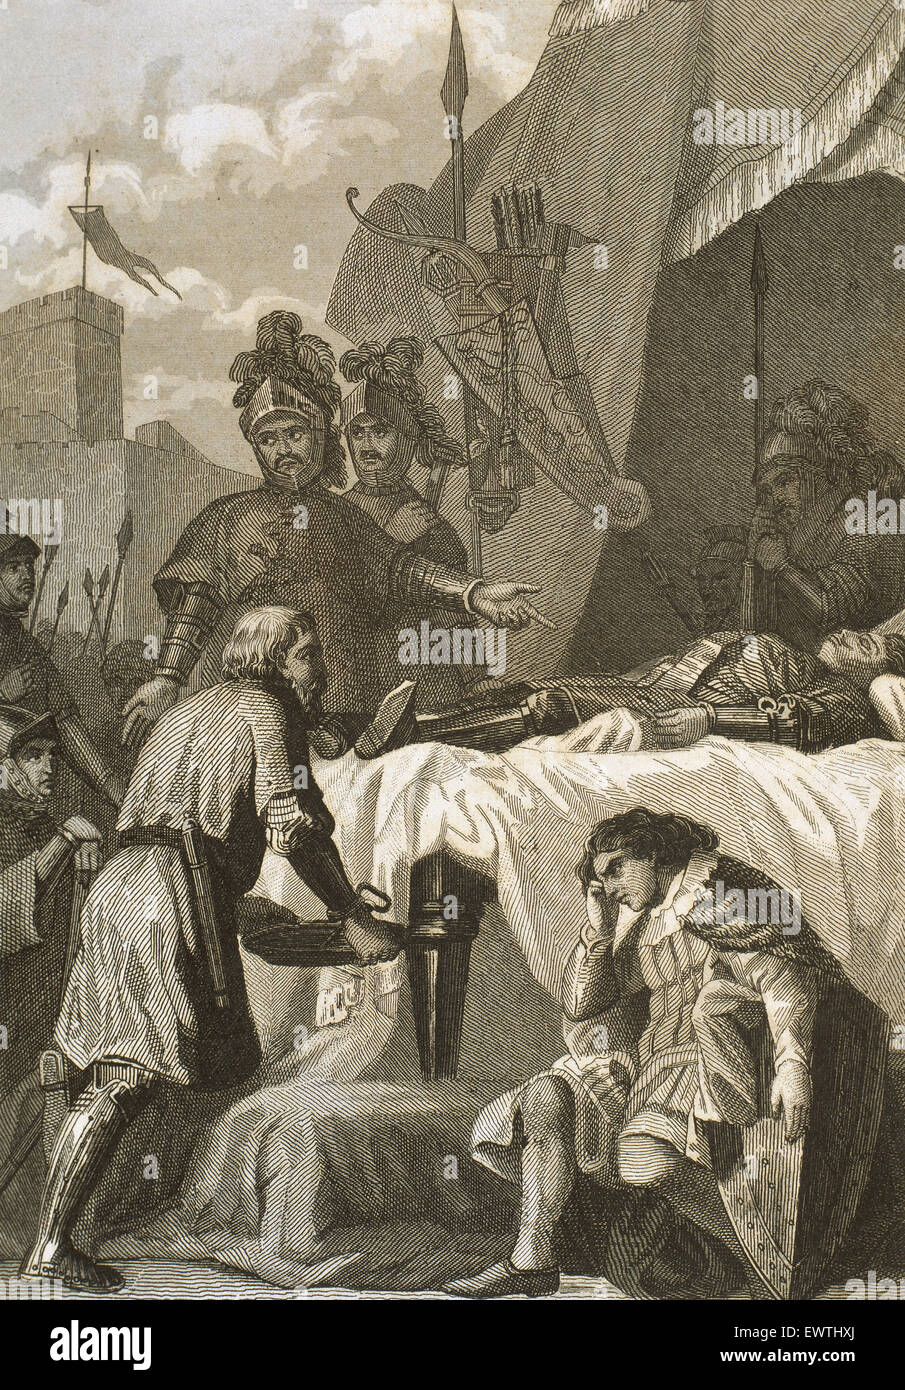 Rodrigo Diaz de Vivar (c.1043-1099), conosciuta come El Cid. Nobile castigliano, capo militare e diplomatico. La morte di El Cid. Incisione del XIX secolo. Foto Stock